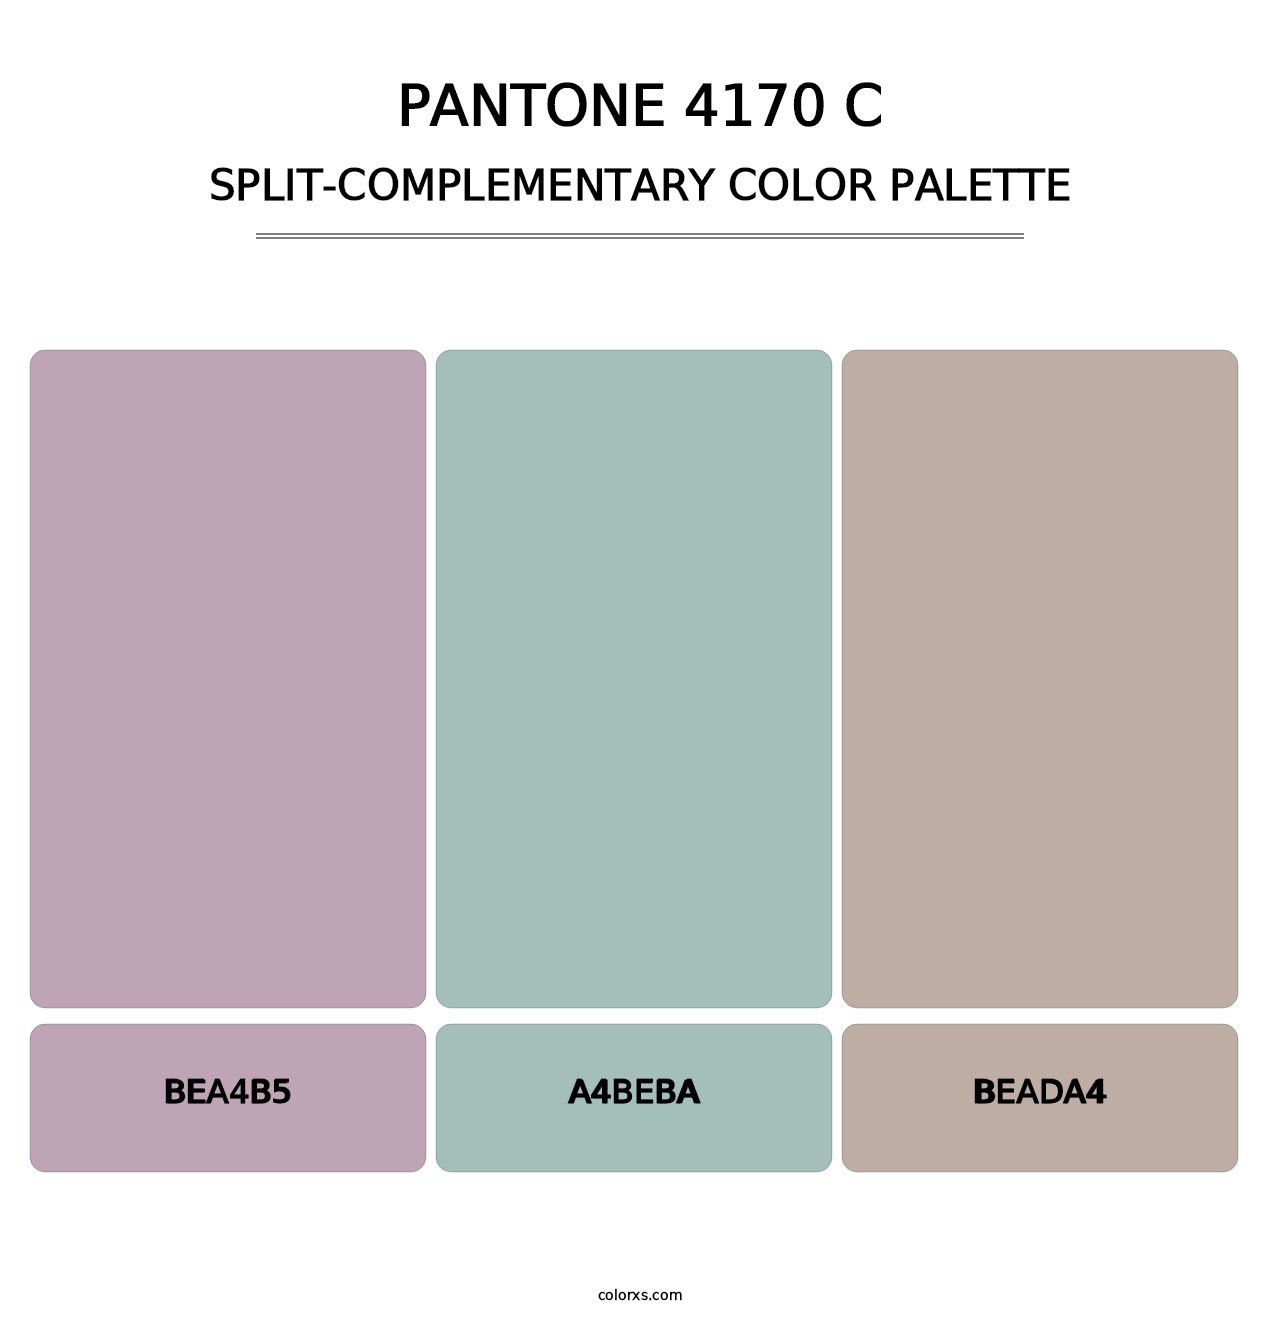 PANTONE 4170 C - Split-Complementary Color Palette